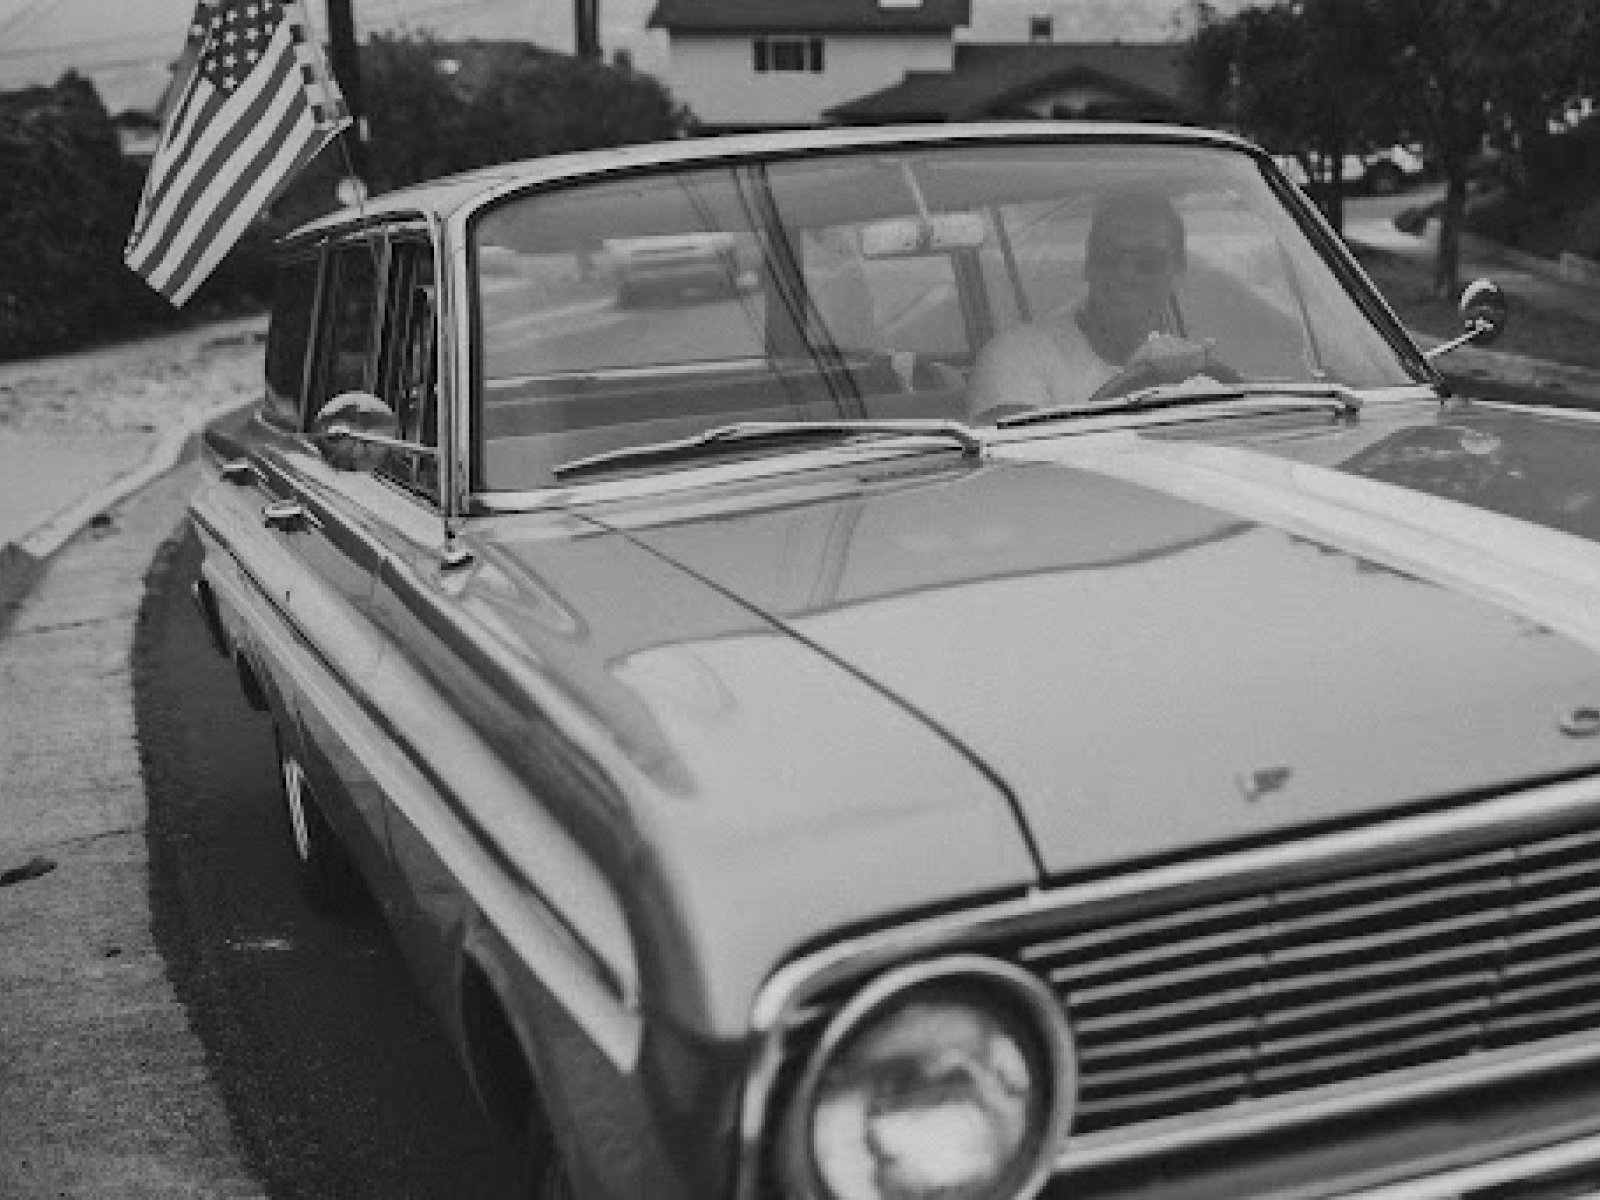 1965 Ford Falcon Wagon